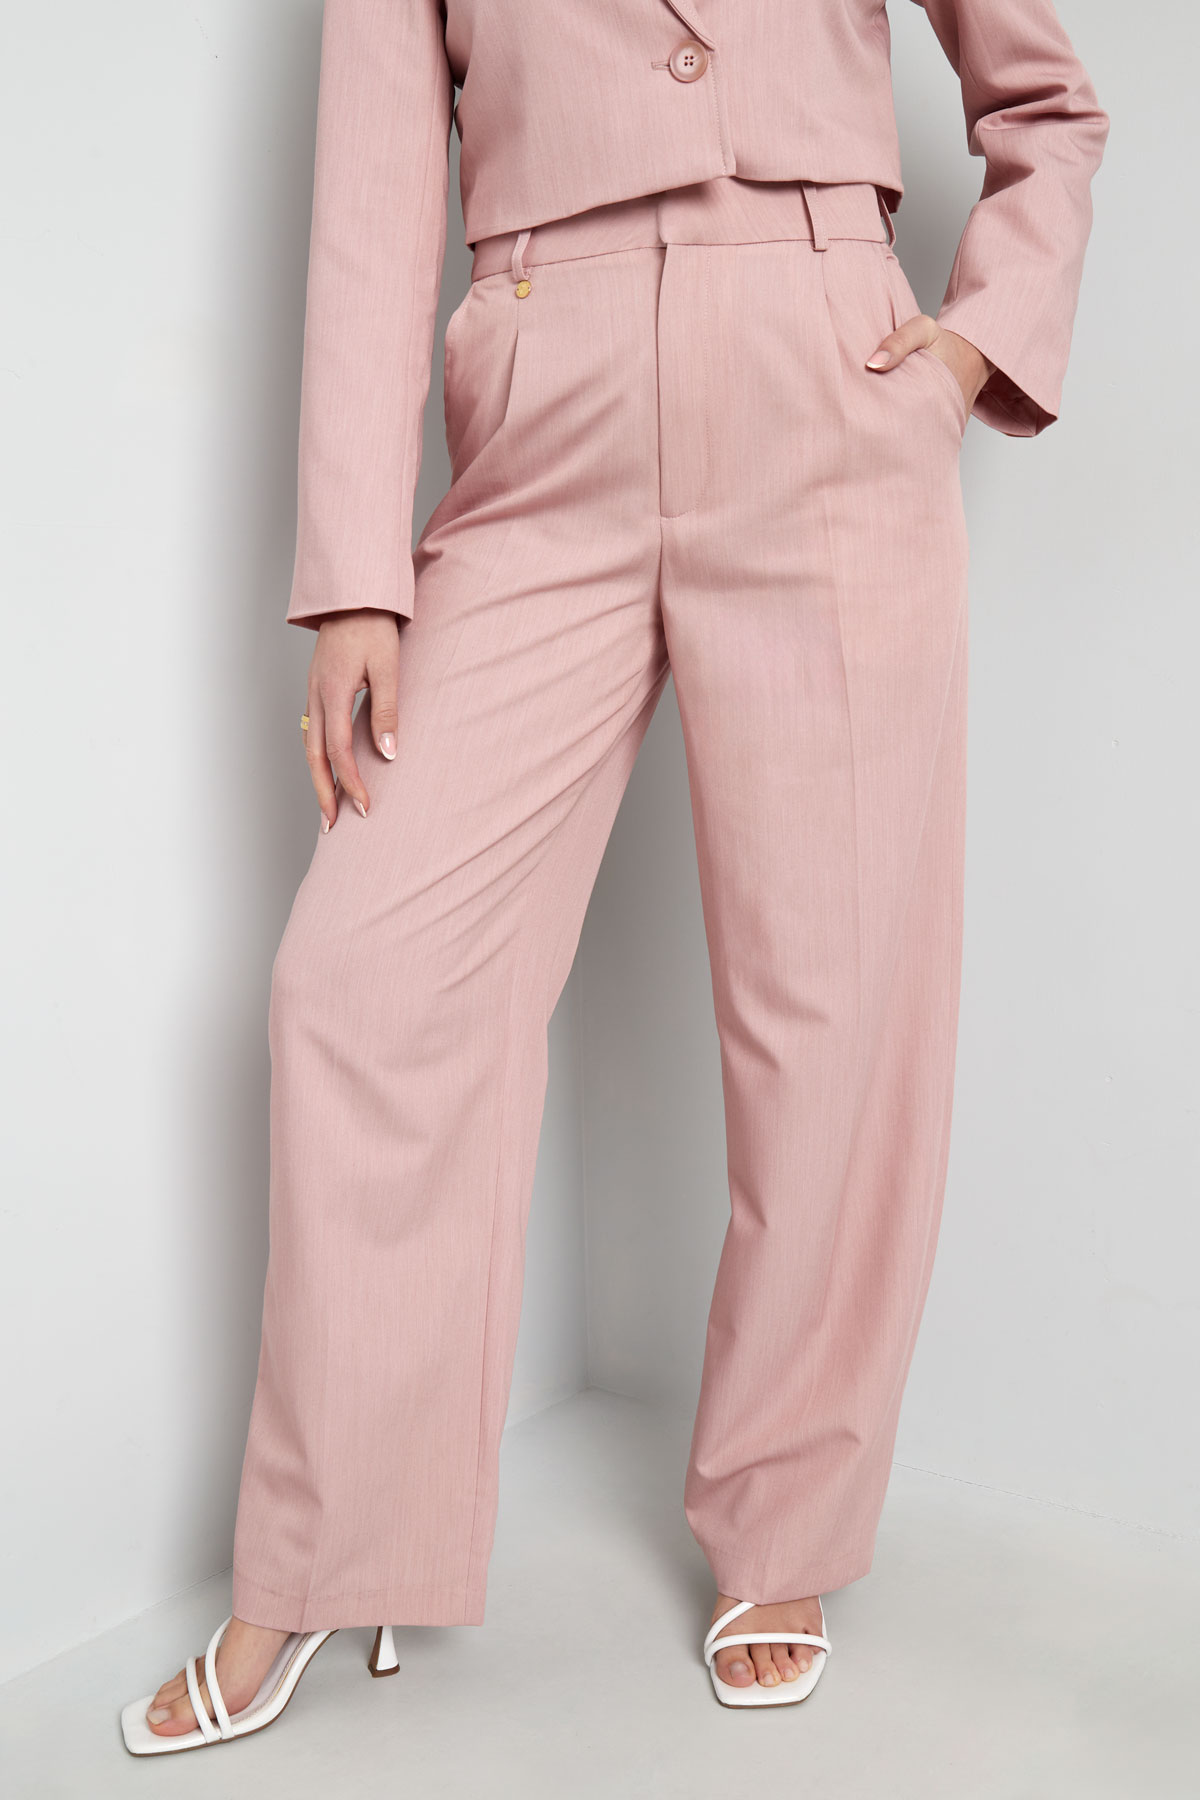 Pantalon met plooien - roze h5 Afbeelding2